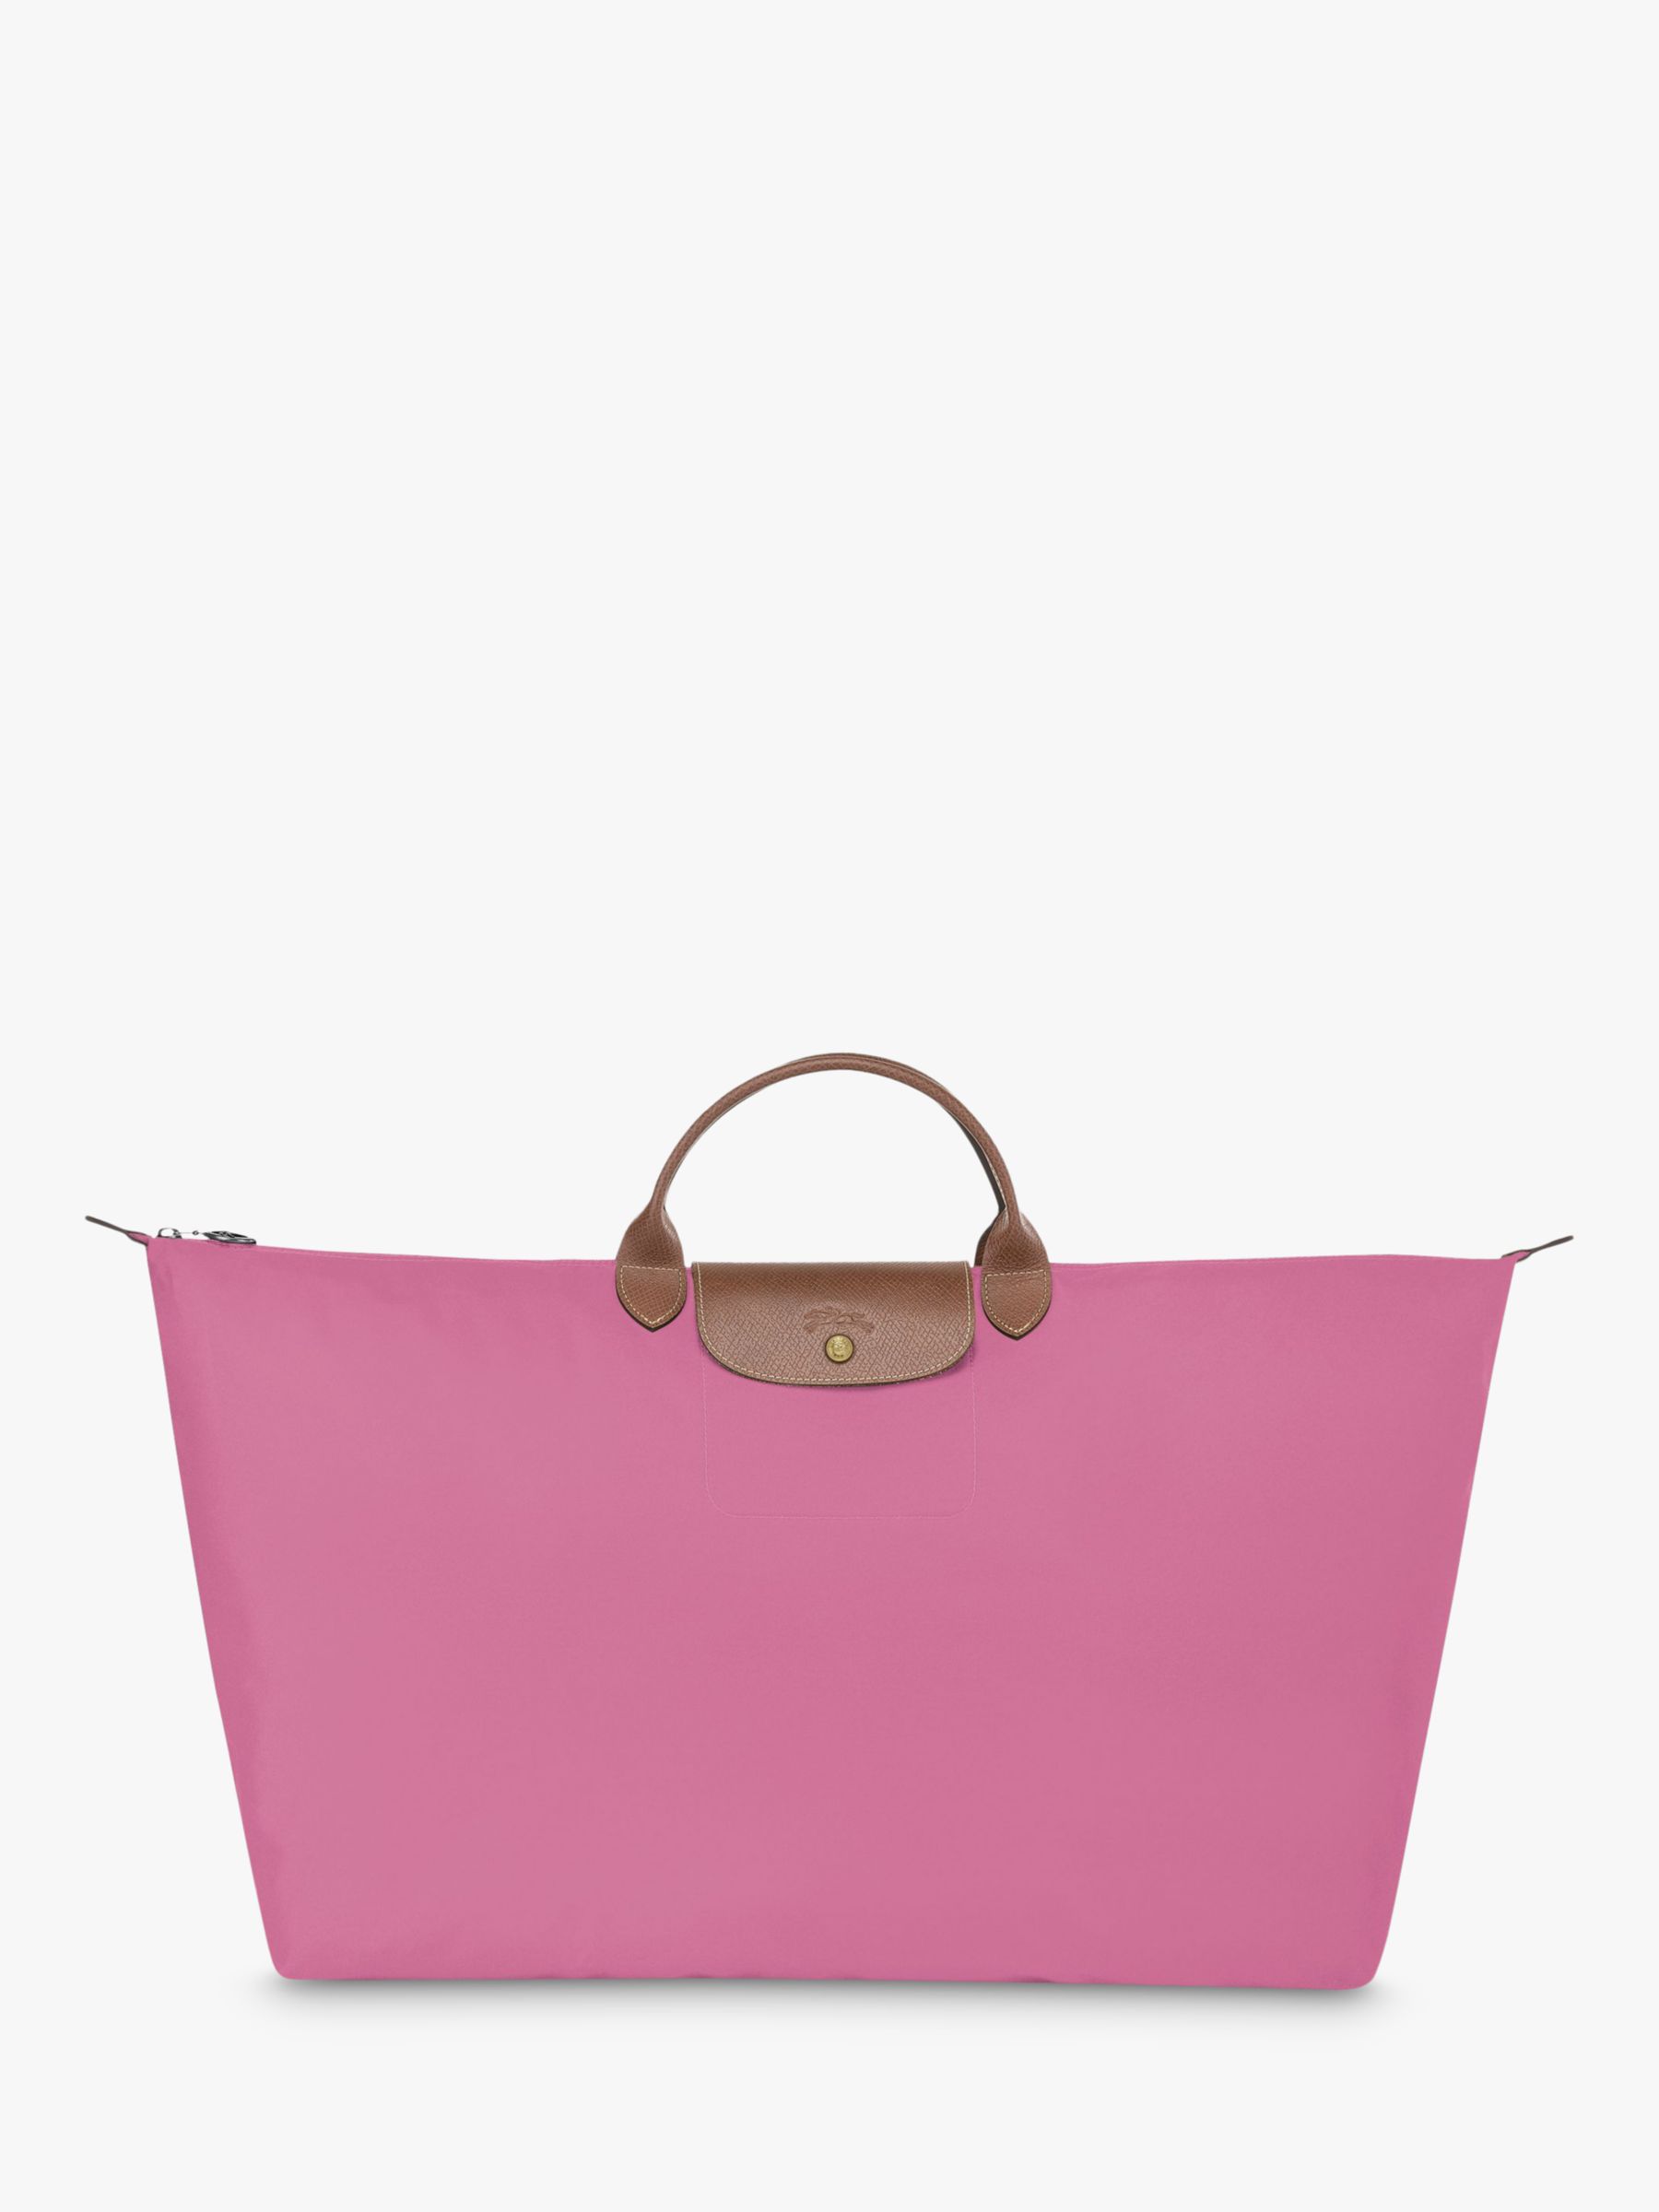 longchamp travel bag pink